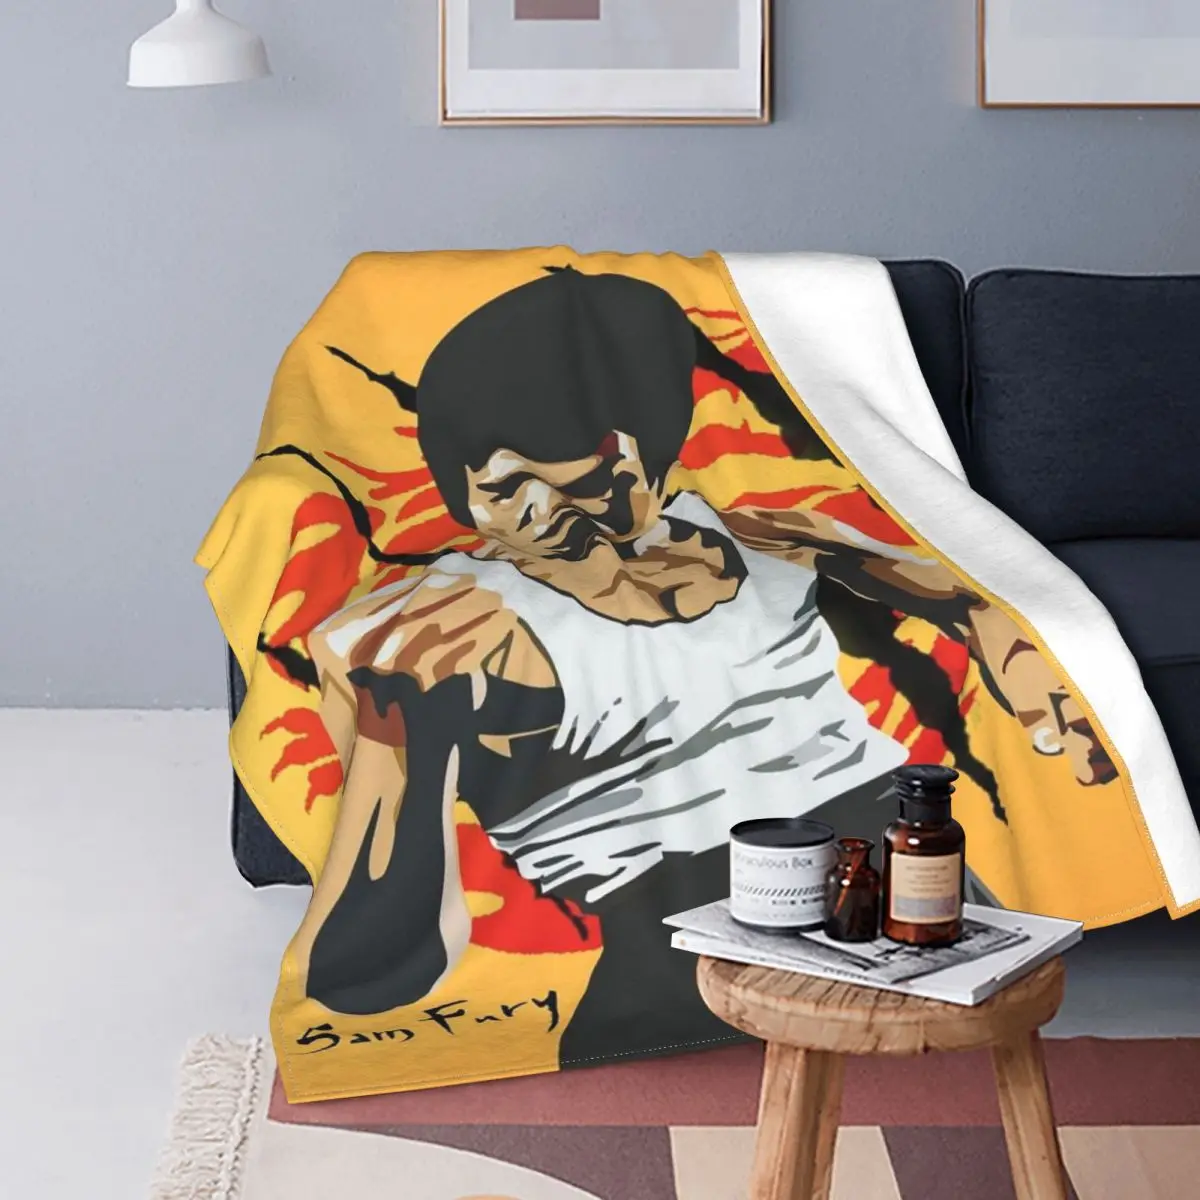 

Bruce Lee-mantas de felpa de Coral con estampado de Kung Fu, manta portátil supercálida para cama, colcha de coche